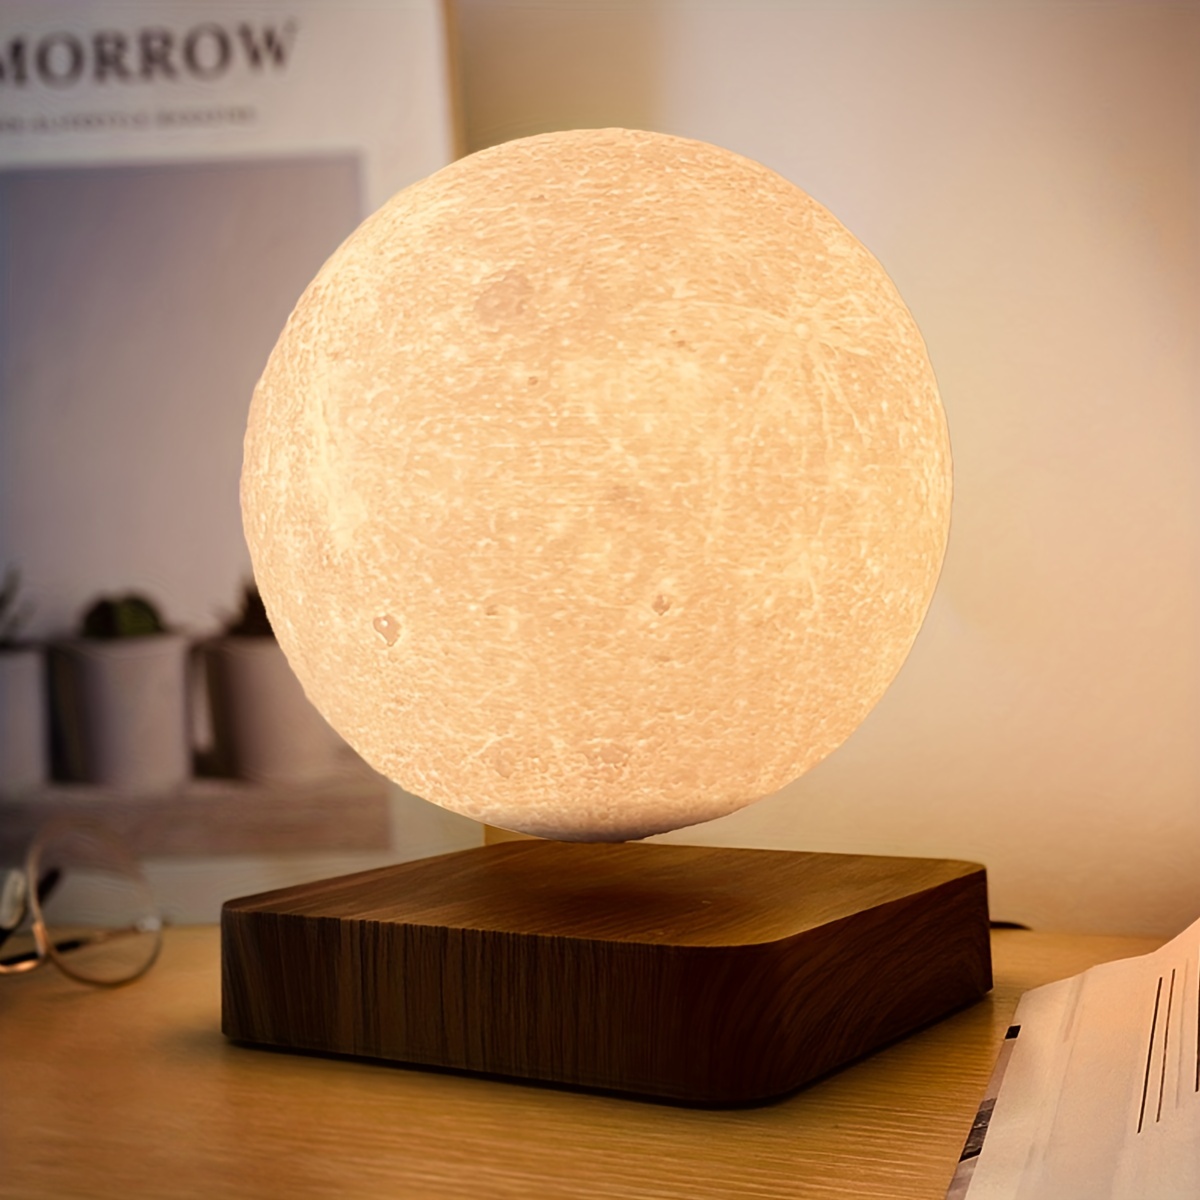 3D Printed Moon Lamp 